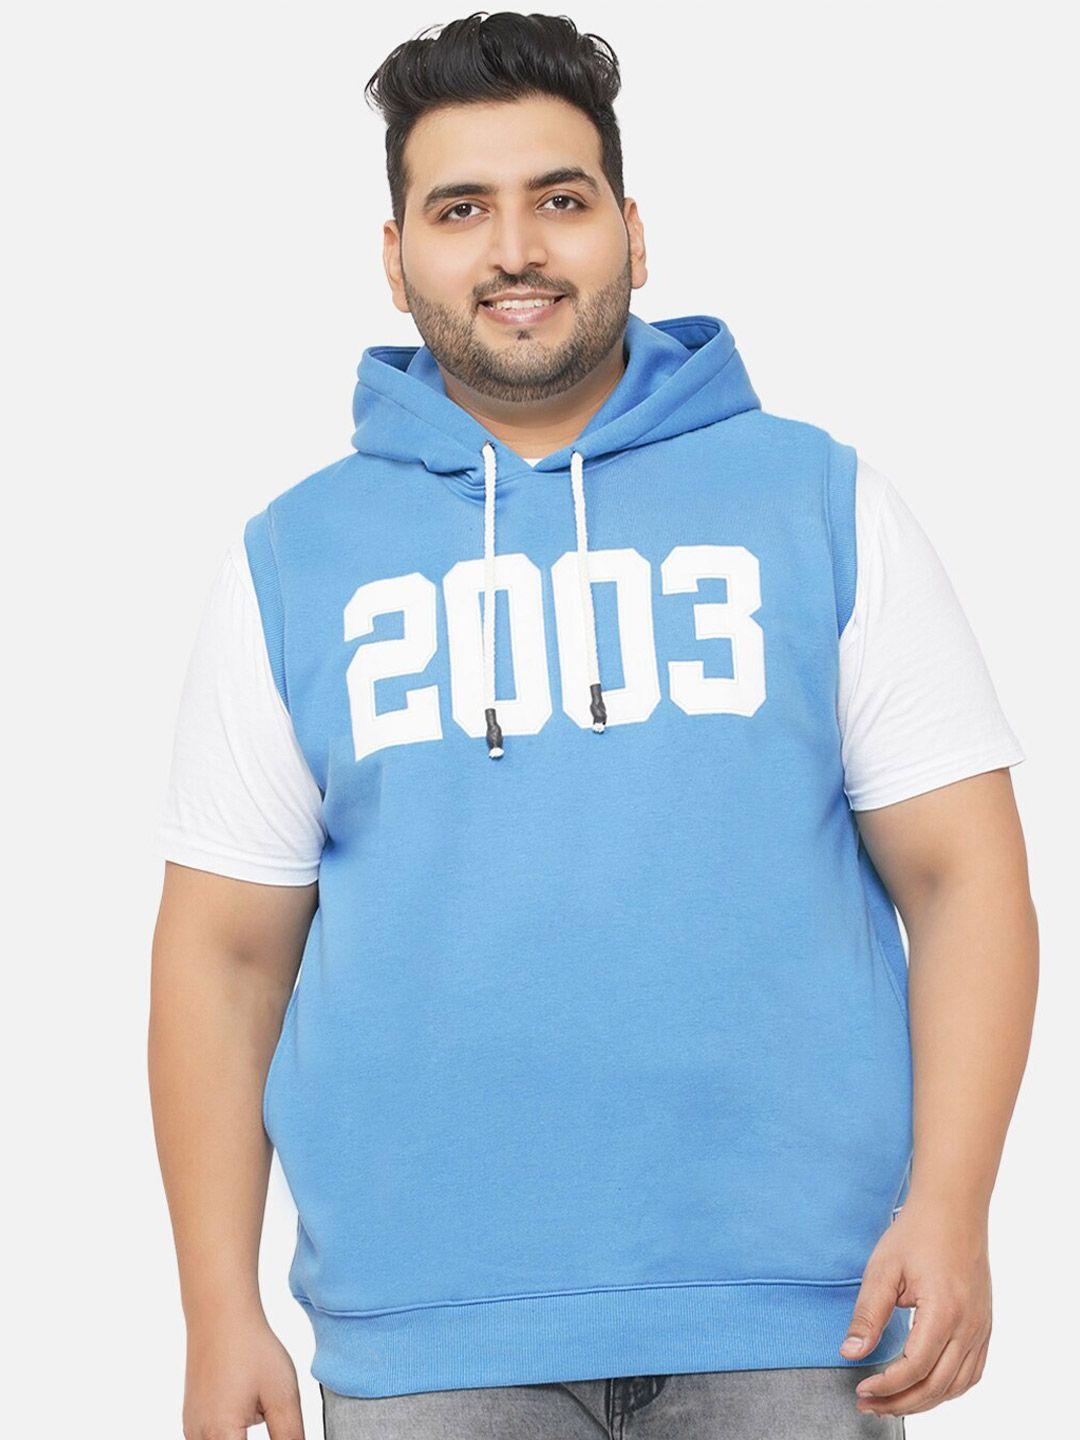 john pride plus-size men blue printed hooded sweatshirt